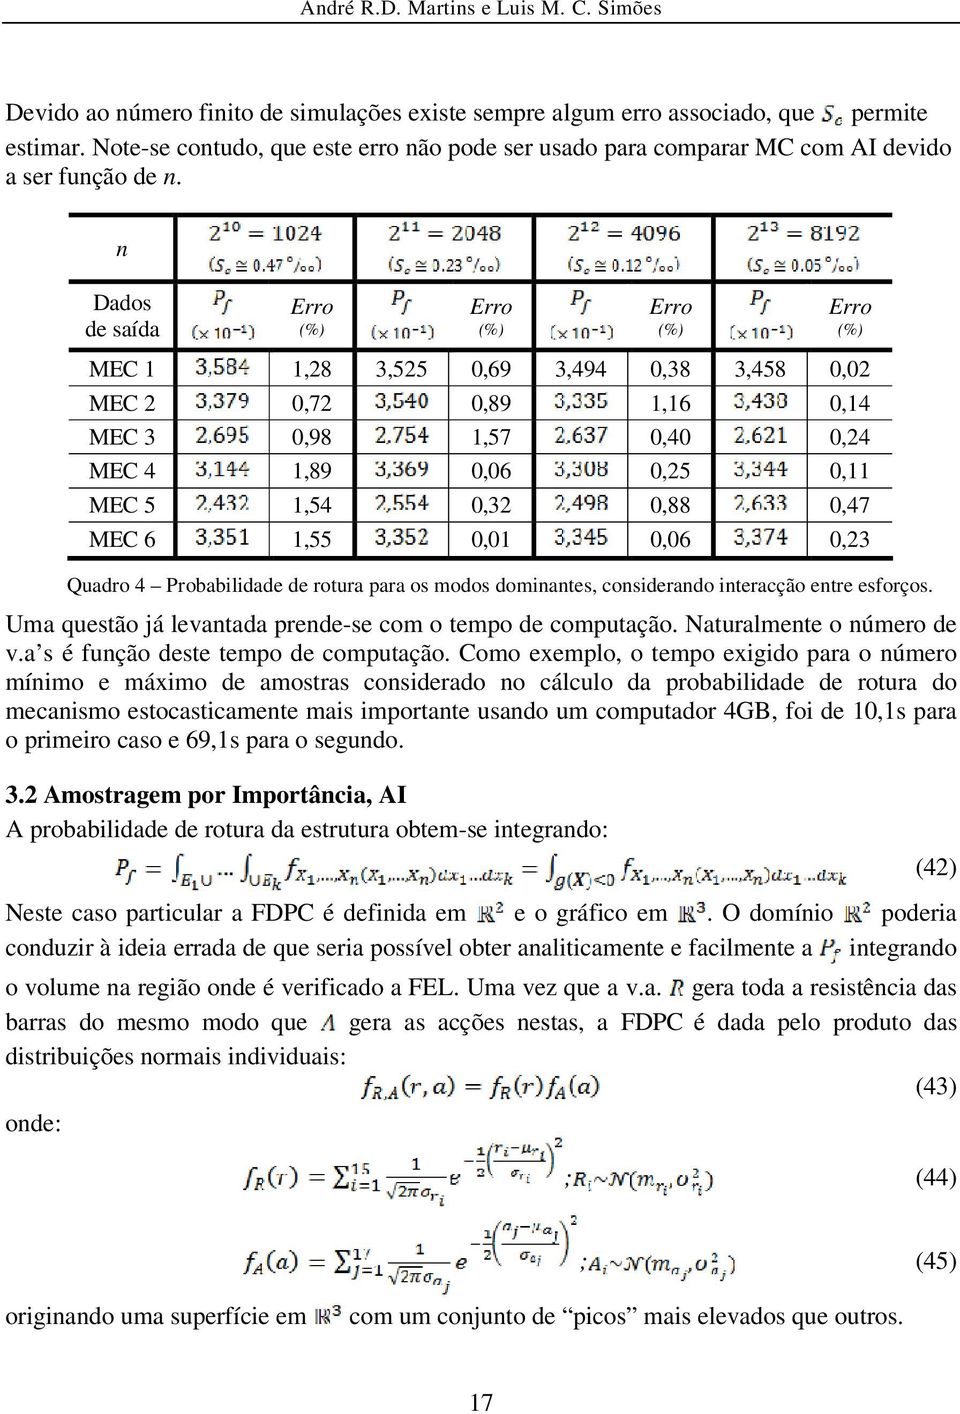 0,47 MEC 6 1,55 0,01 0,06 0,23 Quadro 4 Probabilidade de rotura para os modos dominantes, considerando interacção entre esforços. Uma questão já levantada prende-se com o tempo de computação.